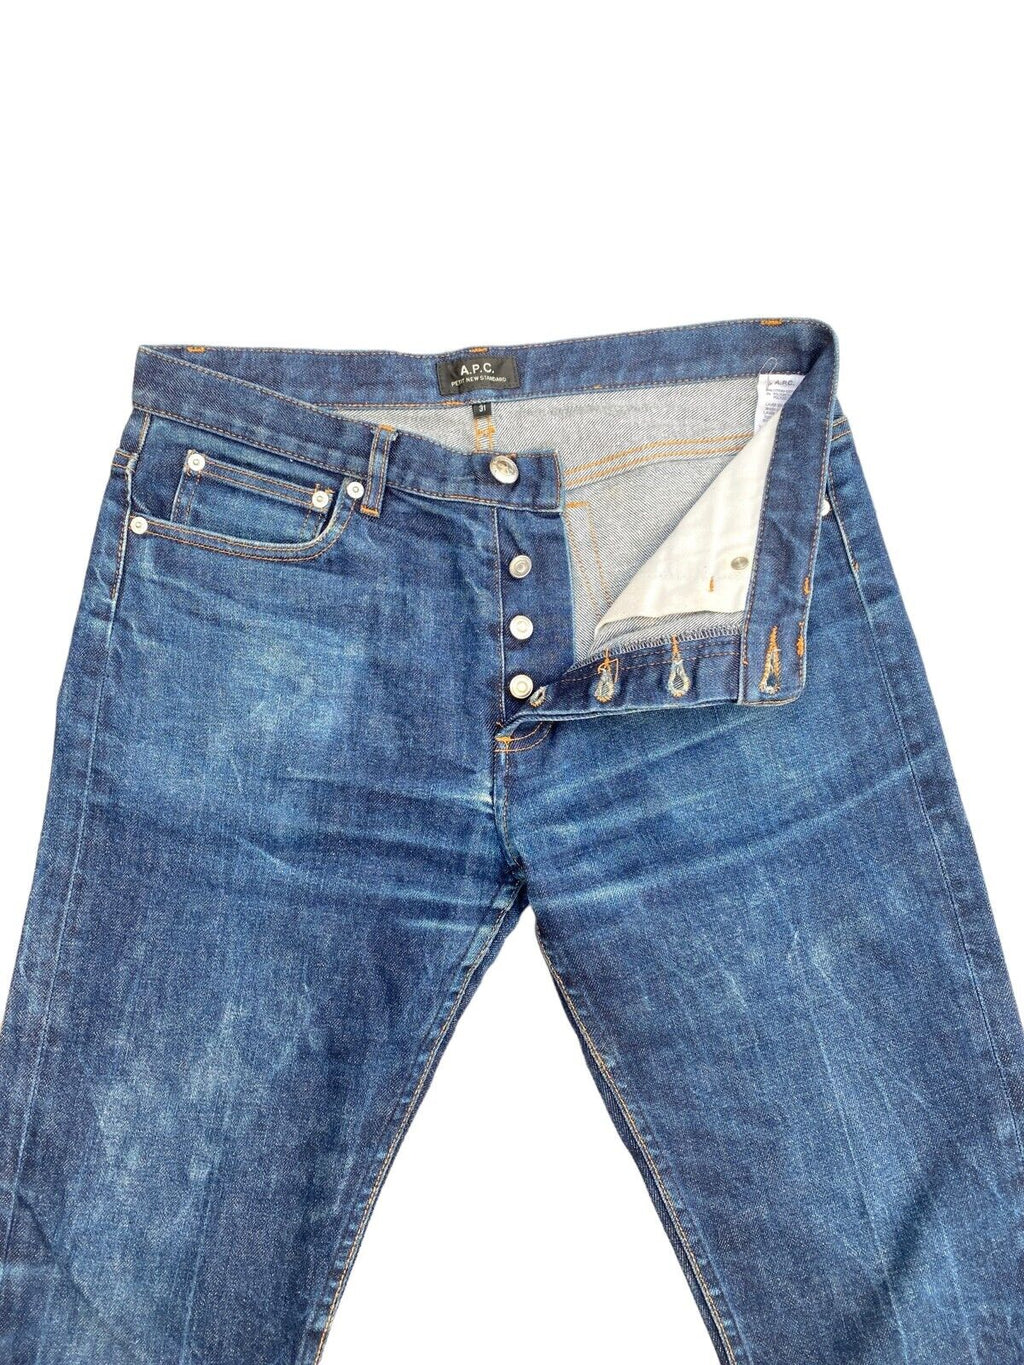 Raw denim jeans  Petit New Standard